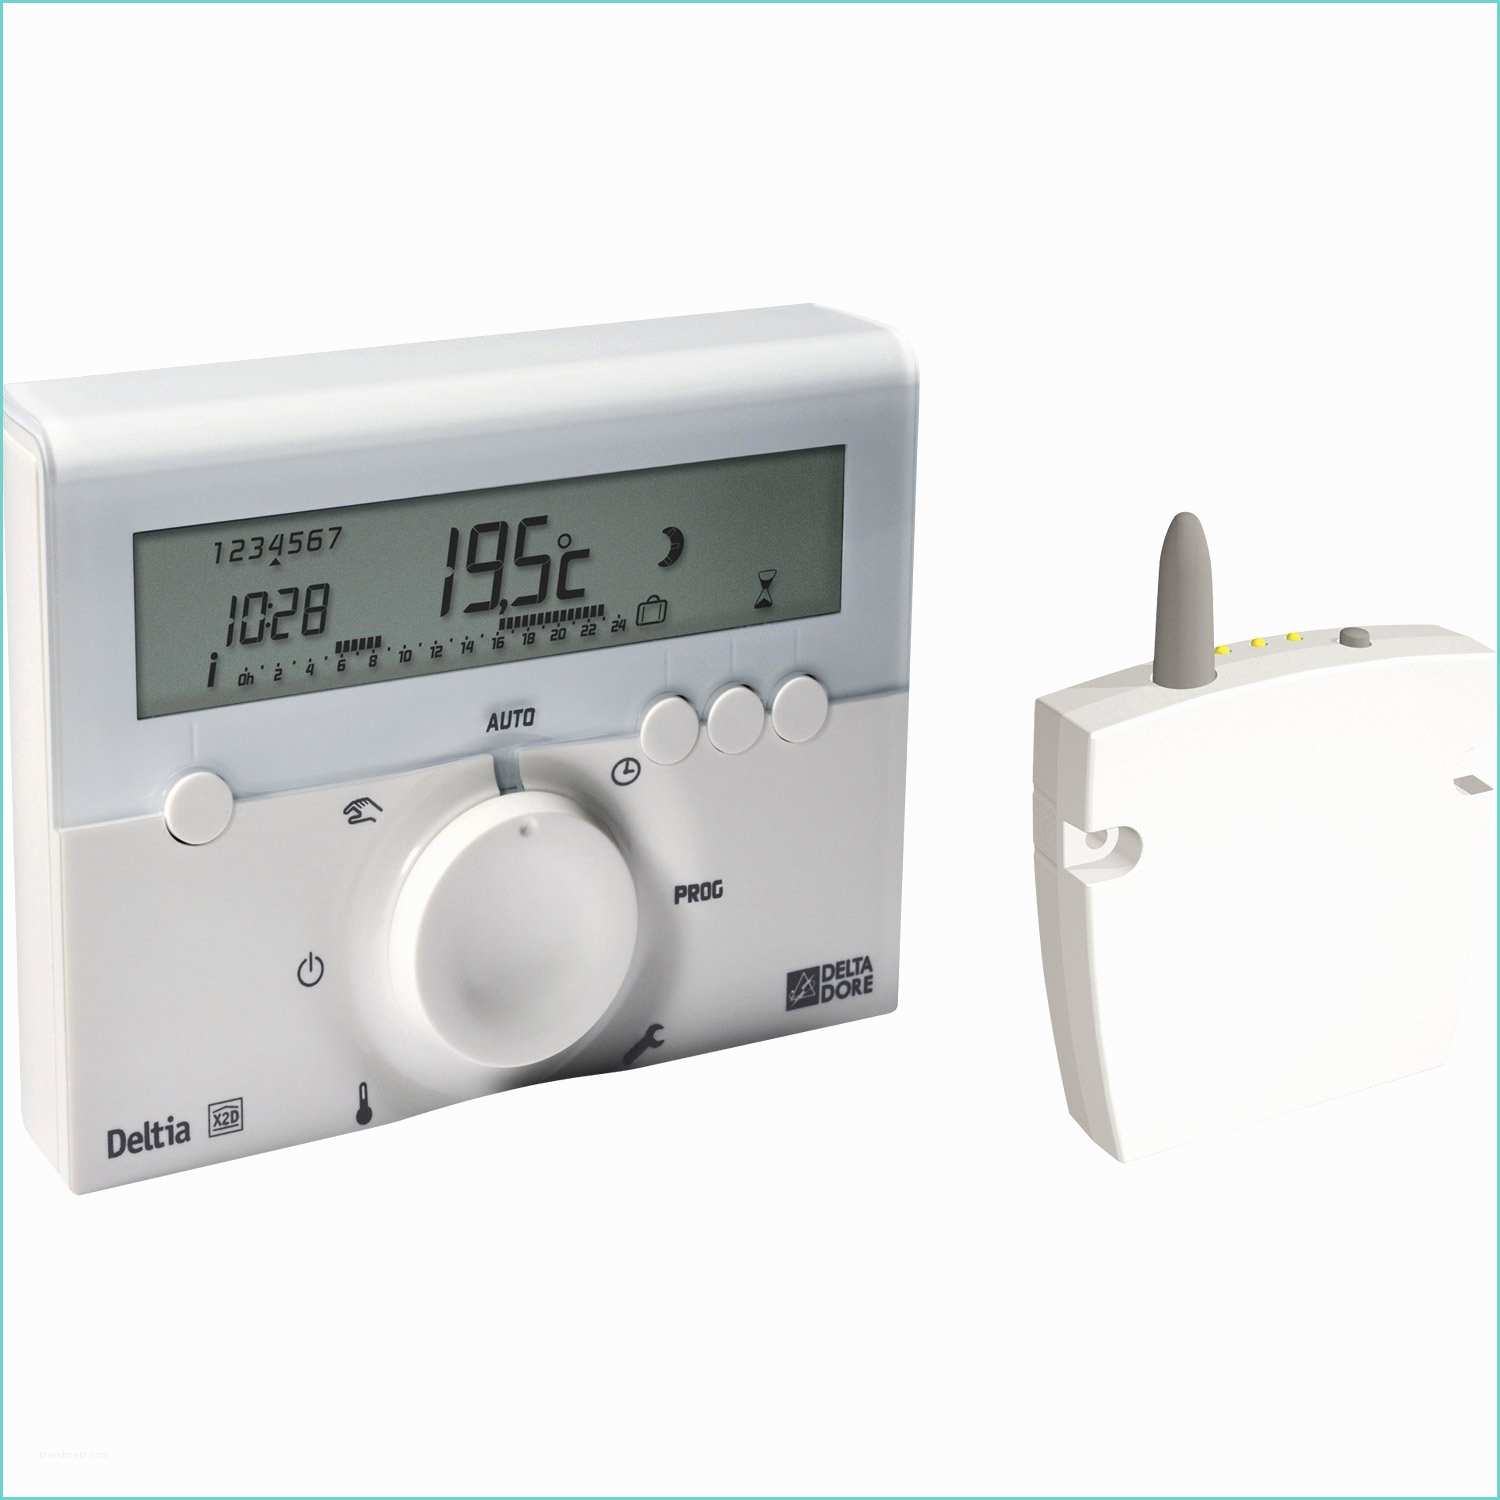 Thermostat Delta Dore Leroy Merlin Programmateur Sans Fil Delta Dore Deltia 8 33